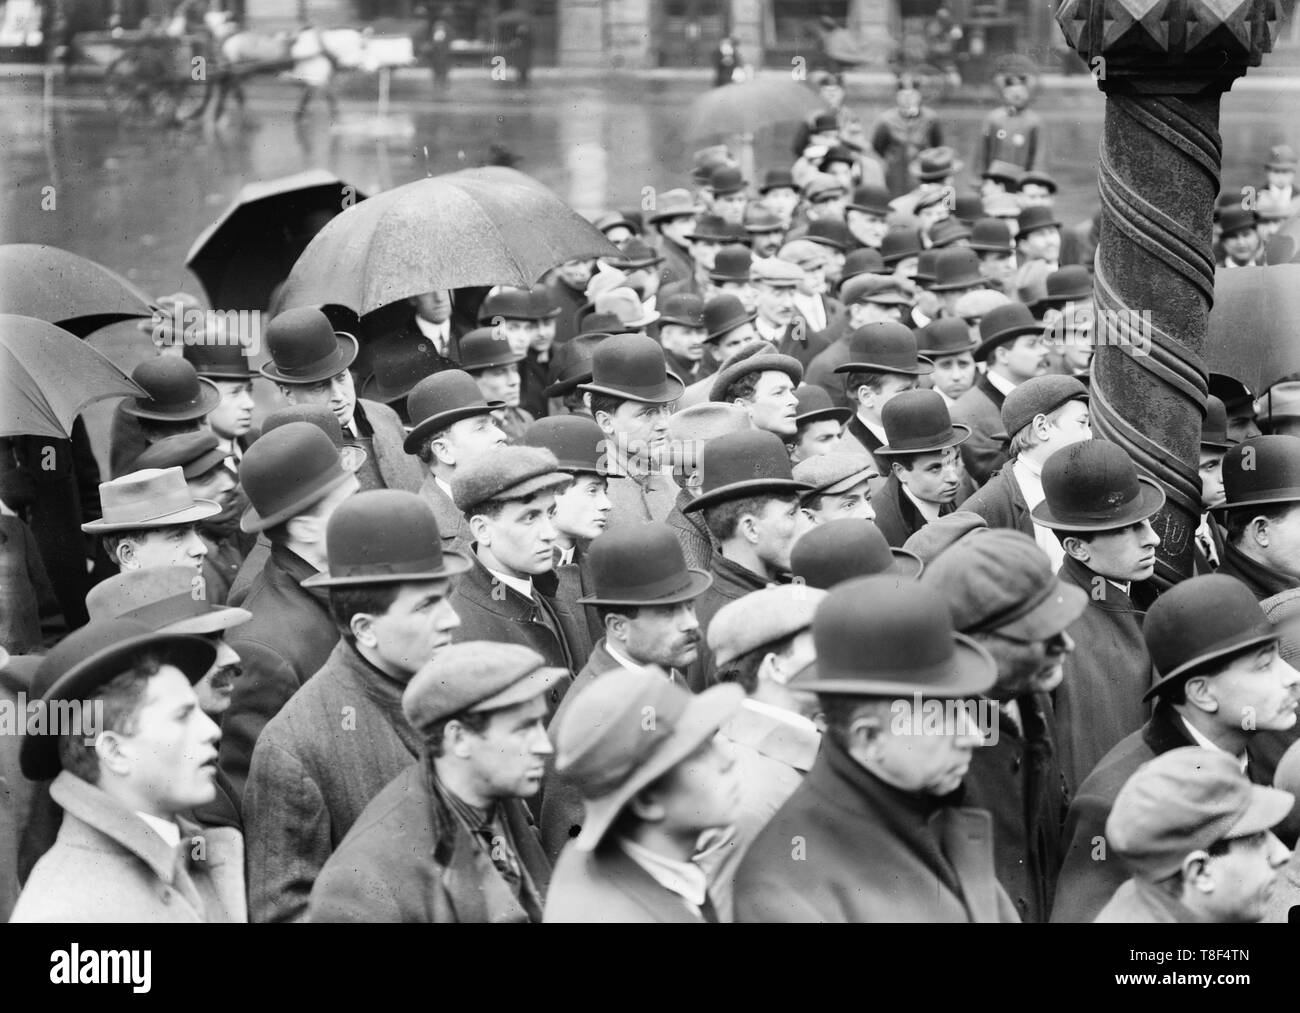 Lawrence strike incontro, New York - Foto mostra un gruppo di uomini riuniti all'aperto, probabilmente nella città di New York, di sentire a proposito di sciopero tessile a Lawrence, Massachusetts, 1912 Foto Stock